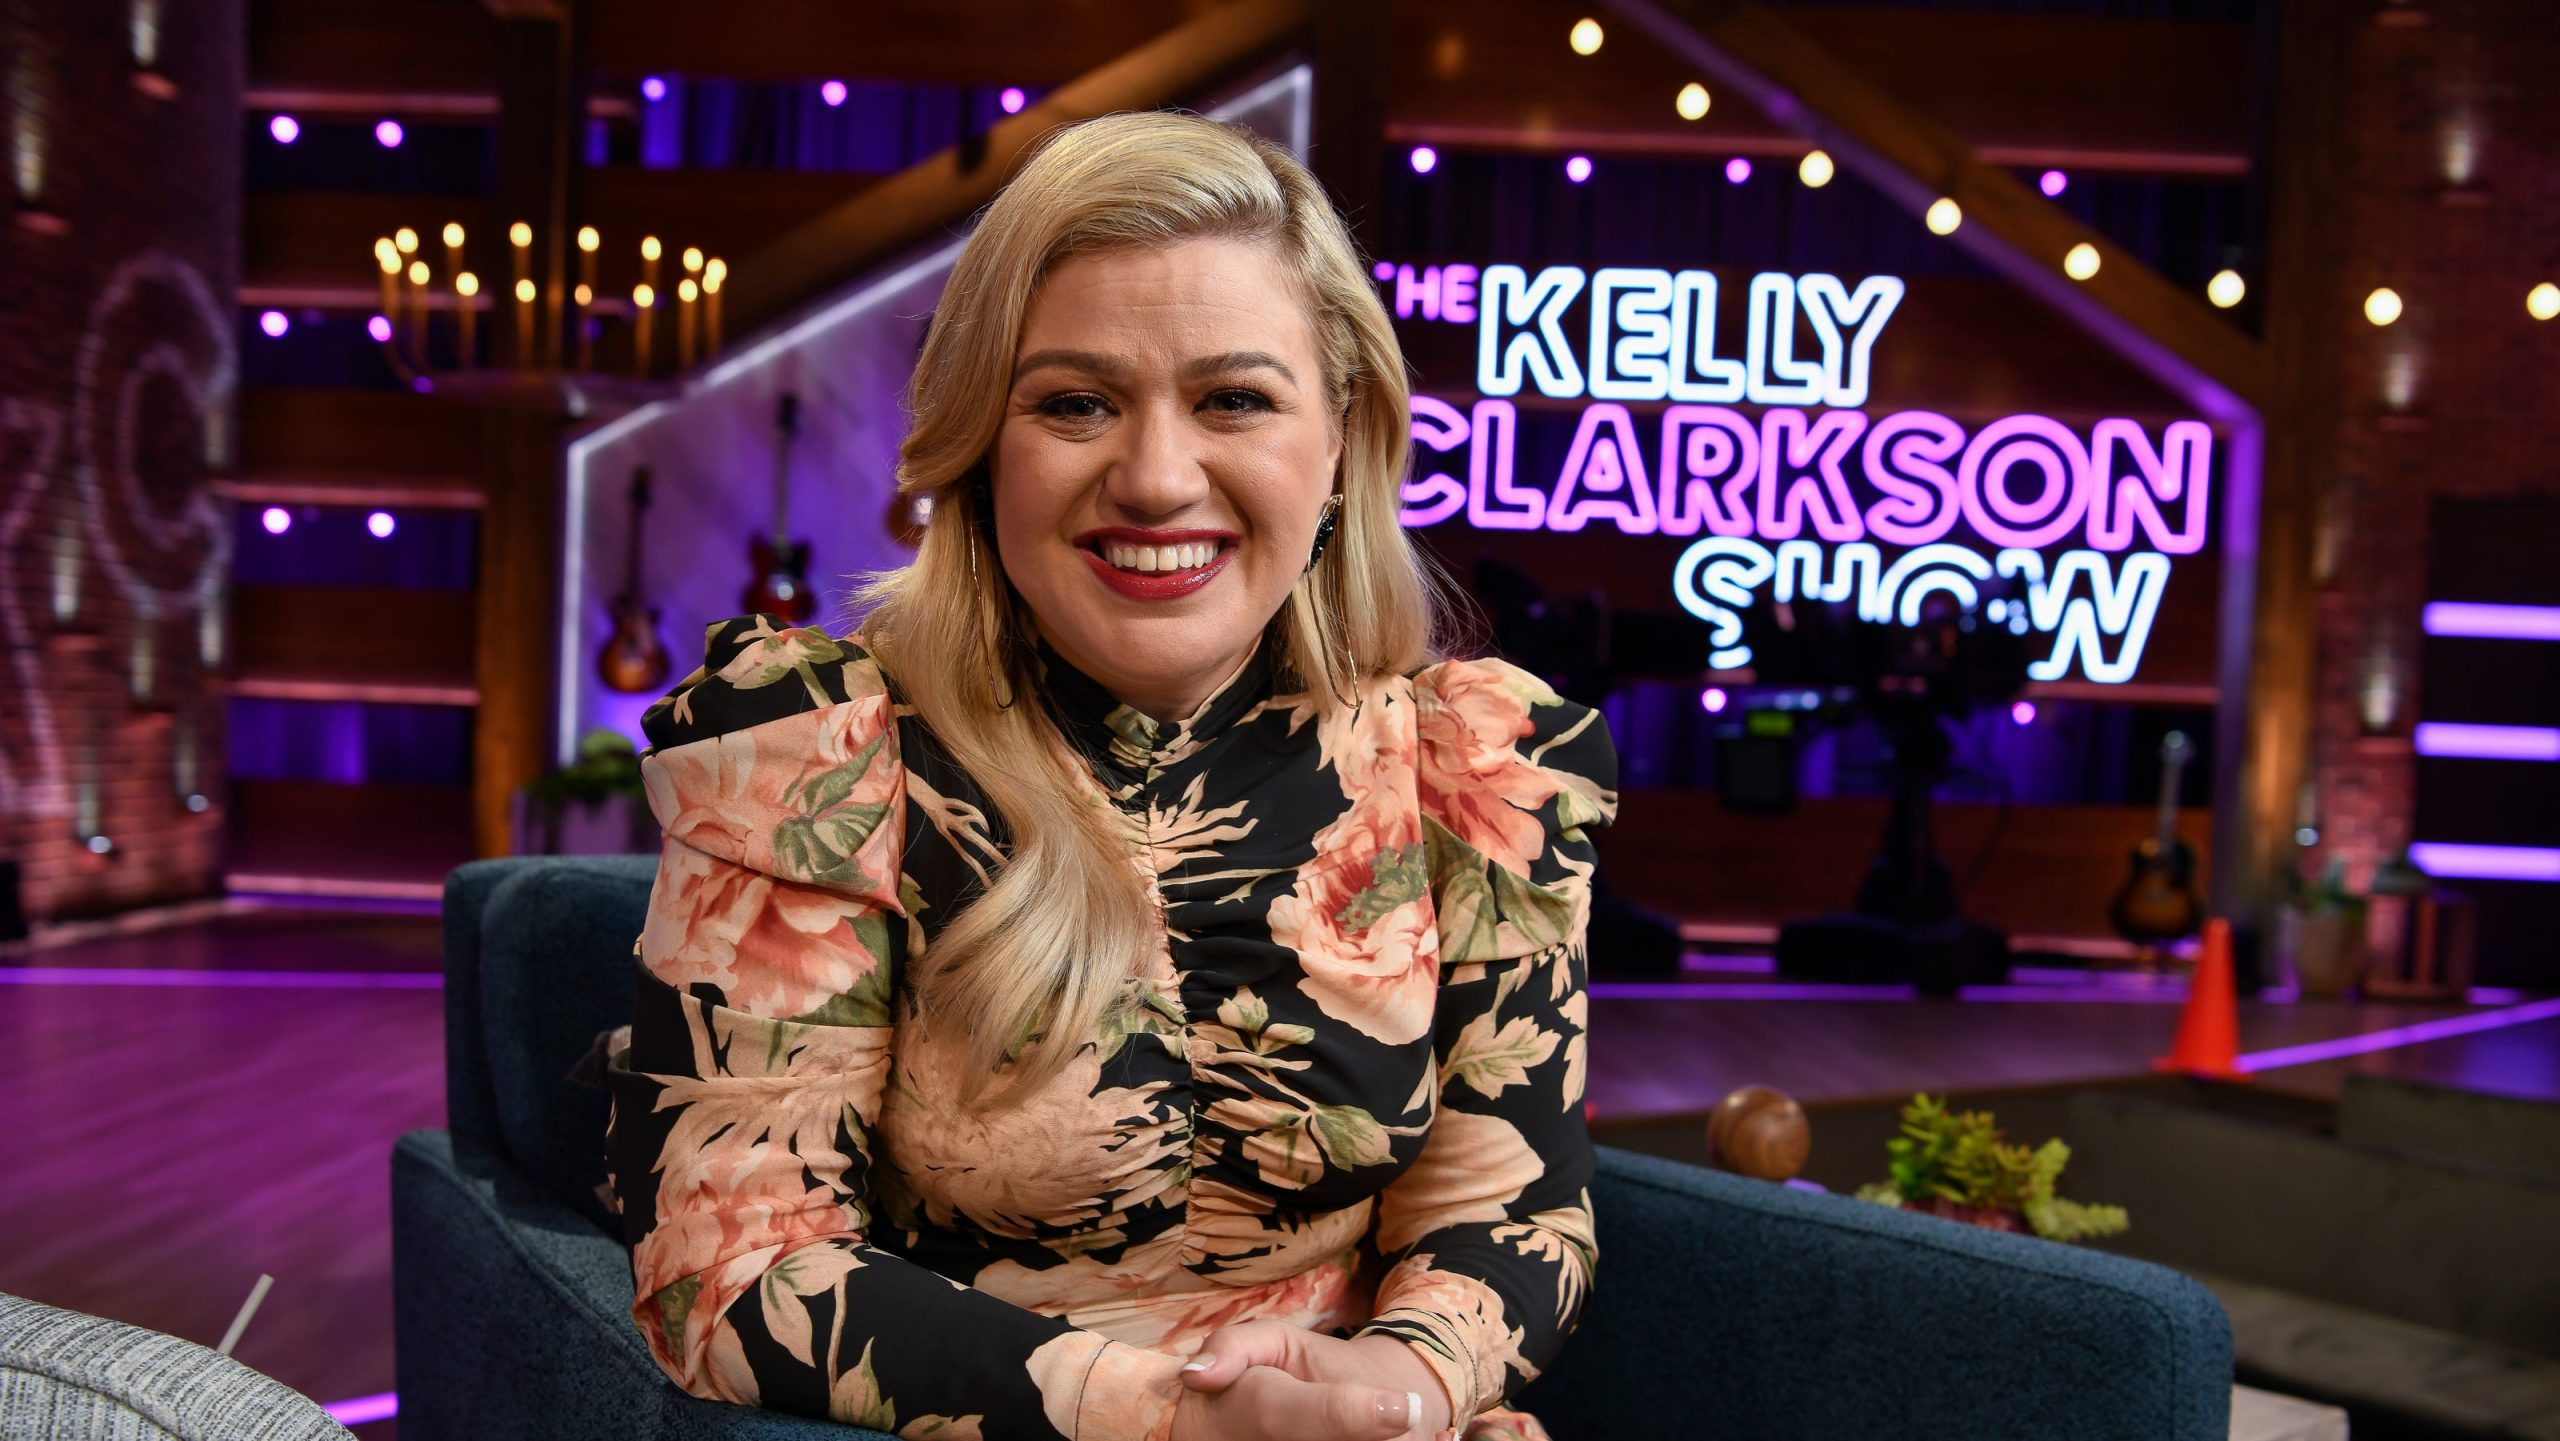 Talk-show de Kelly Clarkson é renovado para mais duas temporadas